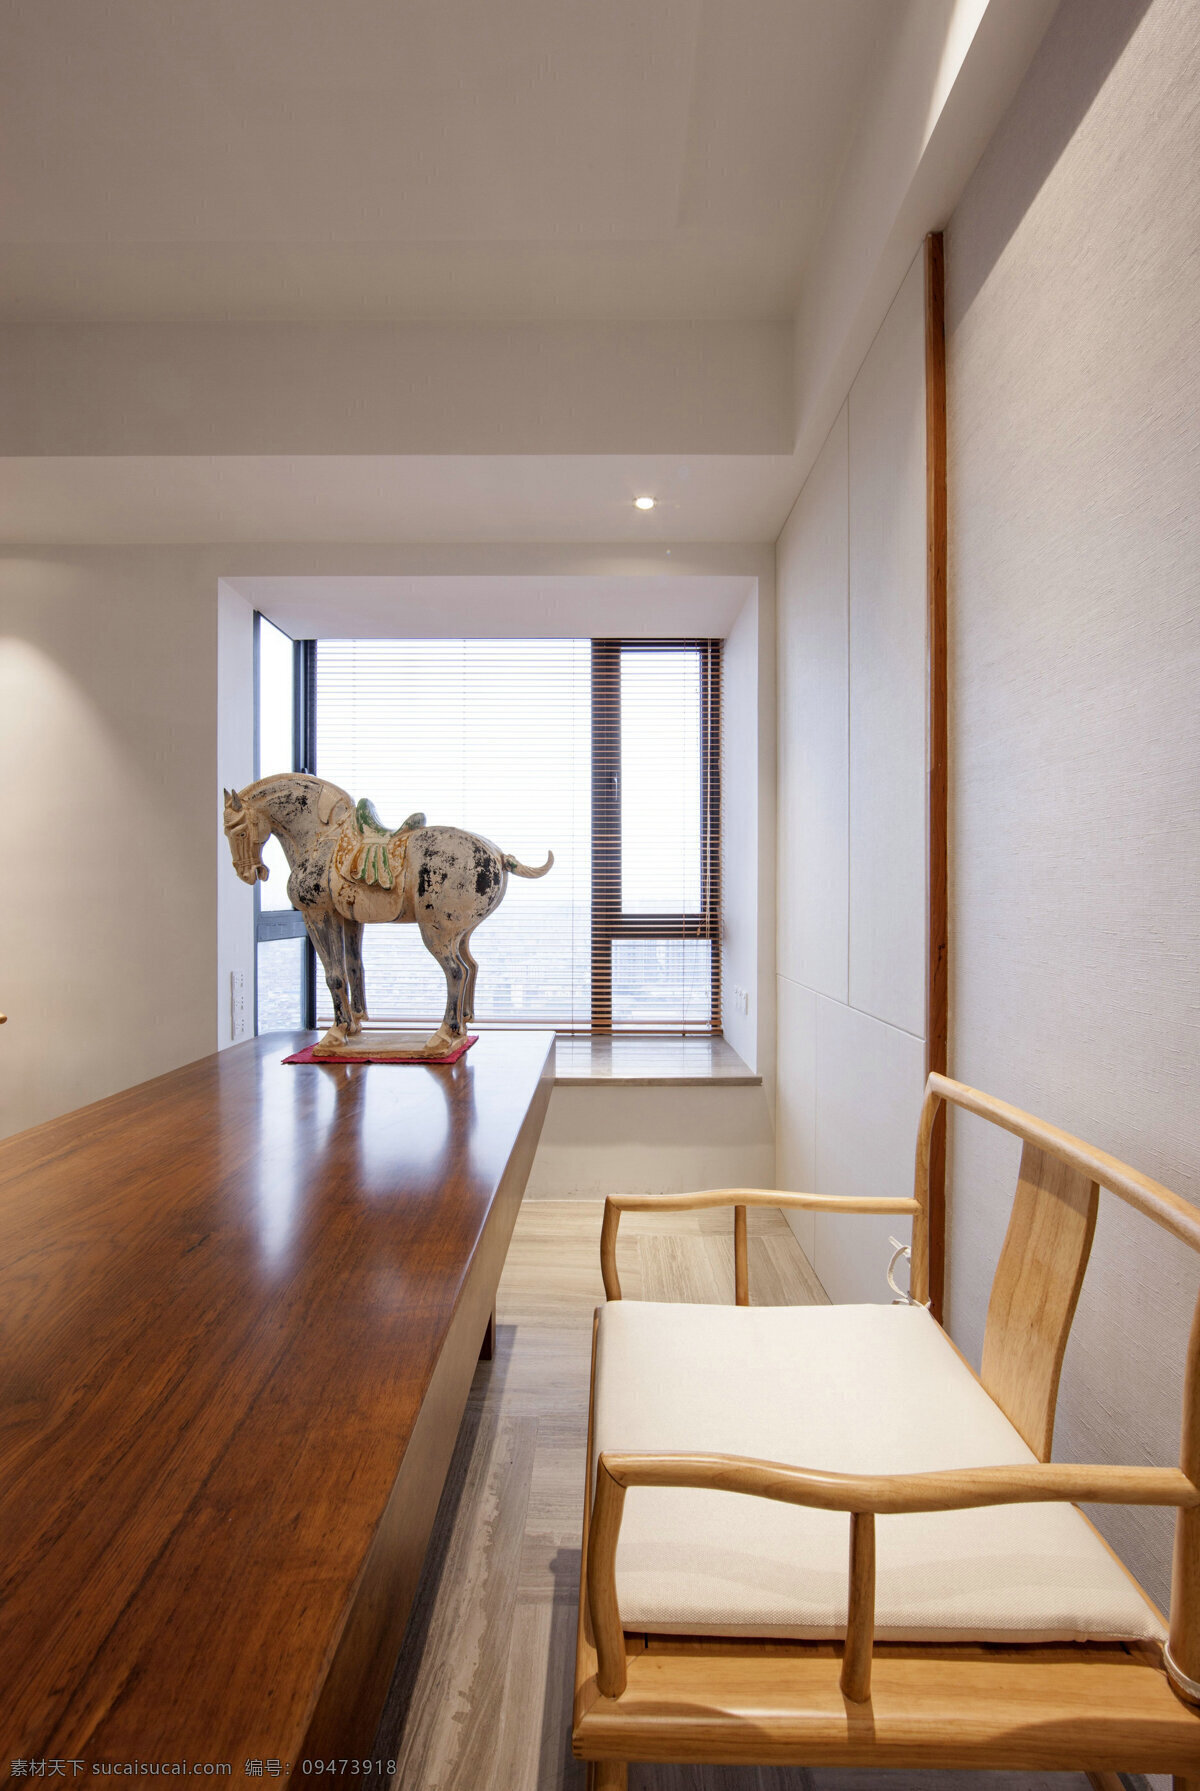 中式 质朴 客厅 木地板 室内装修 效果图 客厅装修 木制椅子 浅色背景墙